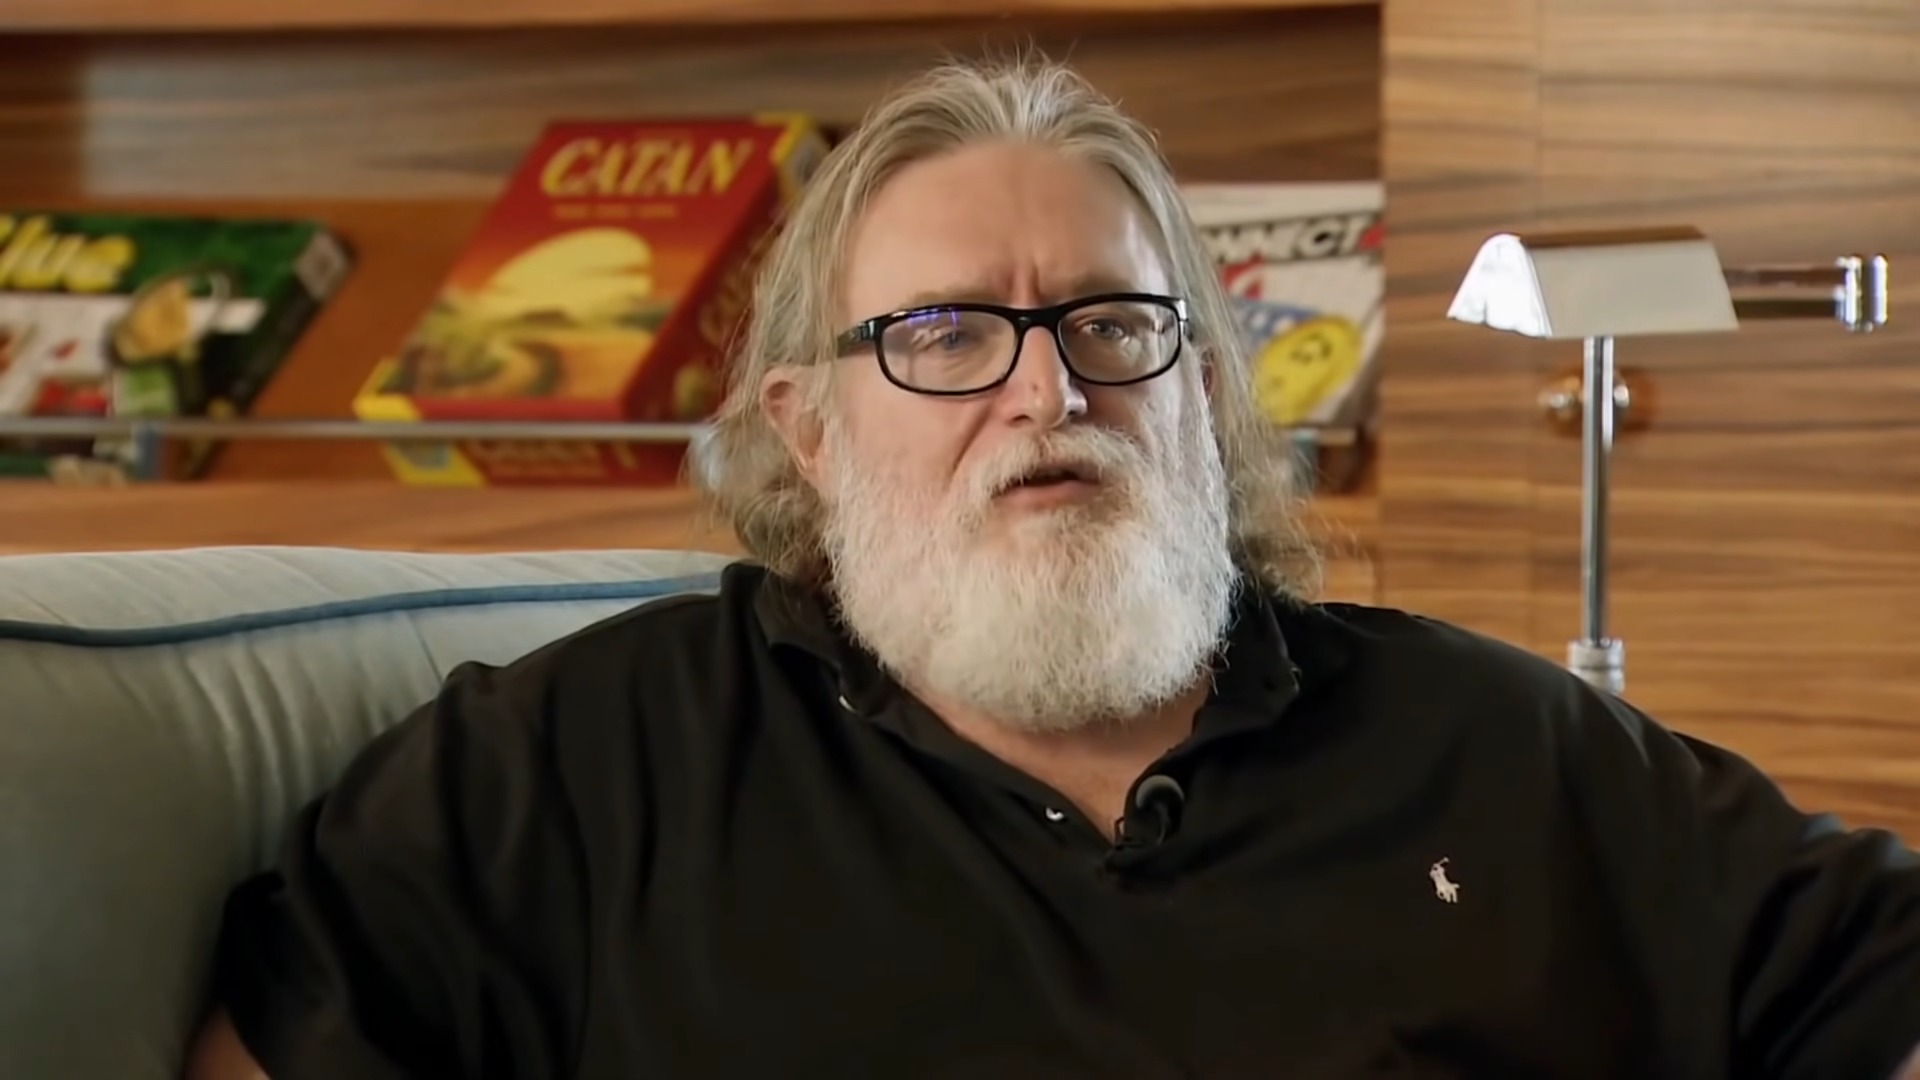 Fortuna de Gabe Newell, fundador da Valve, atinge valor estimado de US$ 5,5  bilhões - GameHall